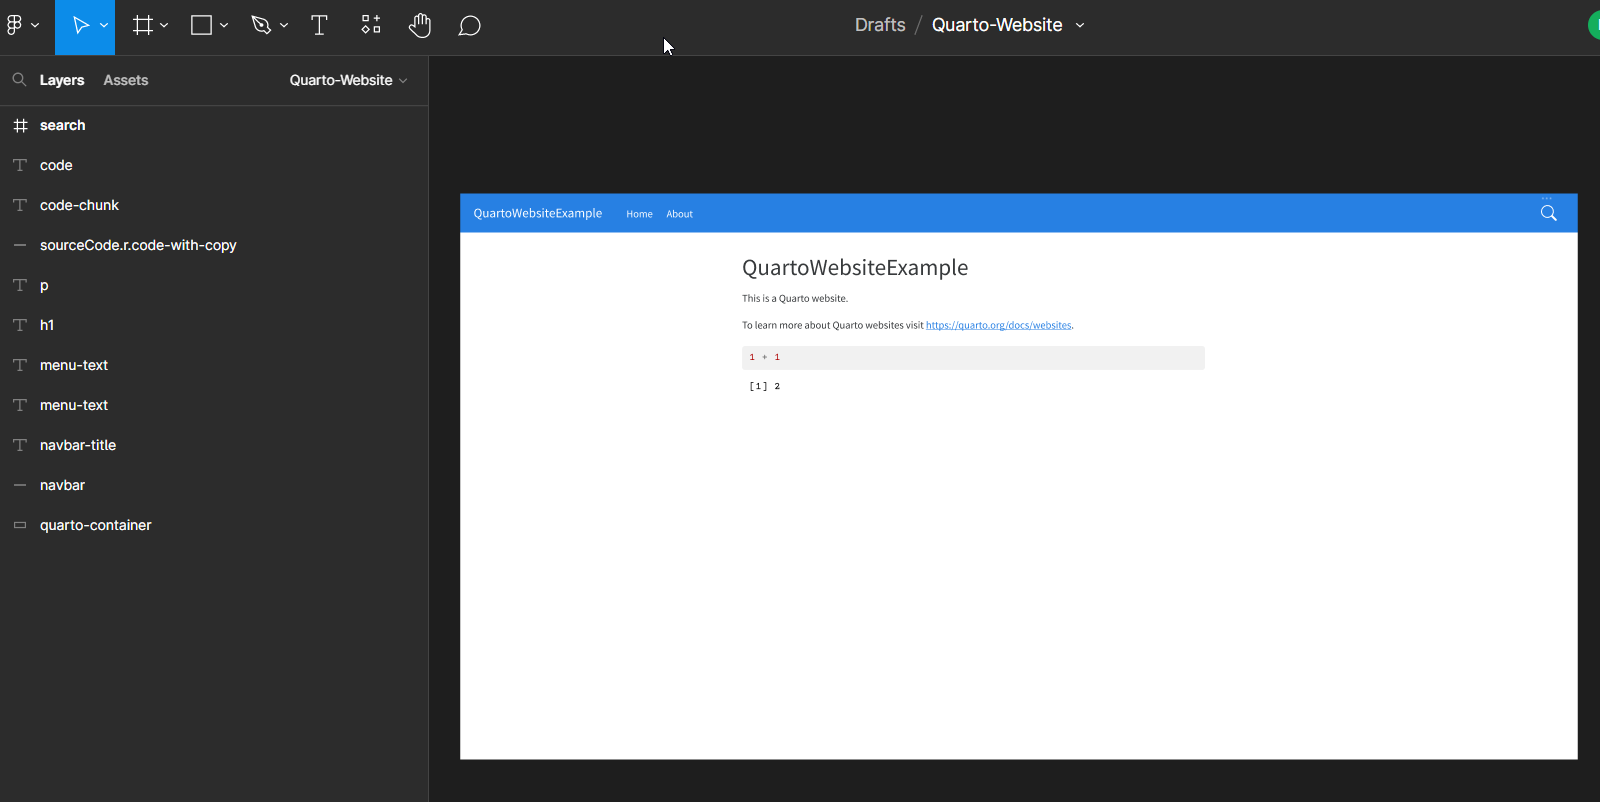 A screenshot of a Figma file named "Quarto-Website"